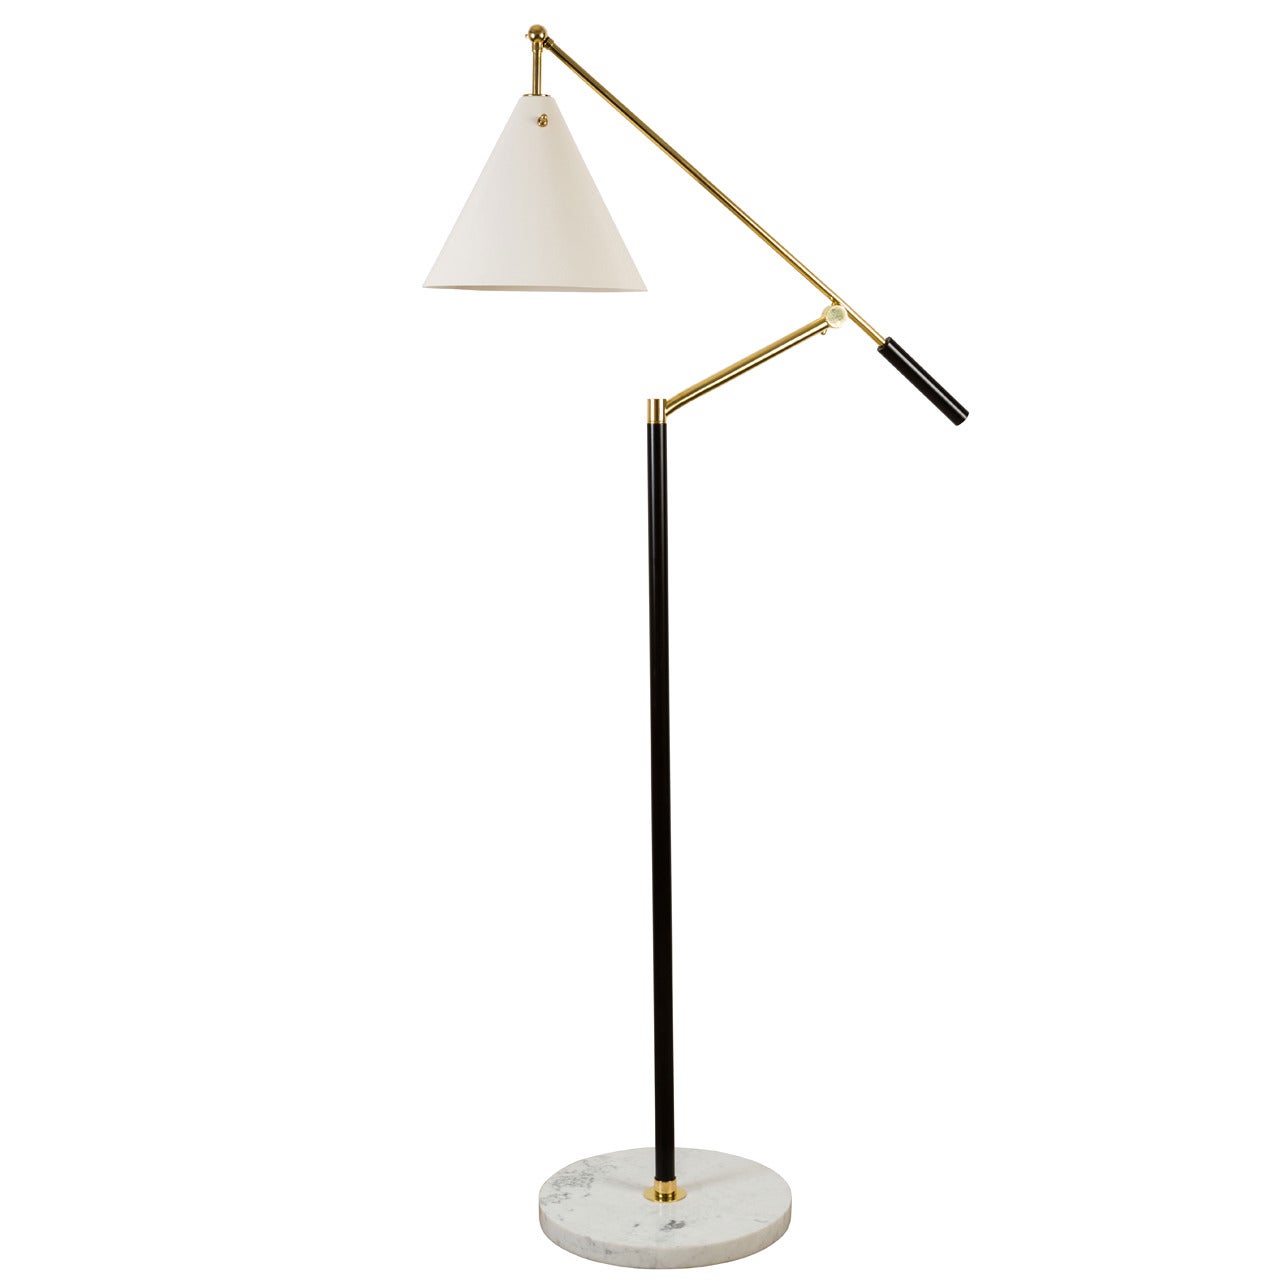 Angelo Lelli for Arredoluce Floor Lamp